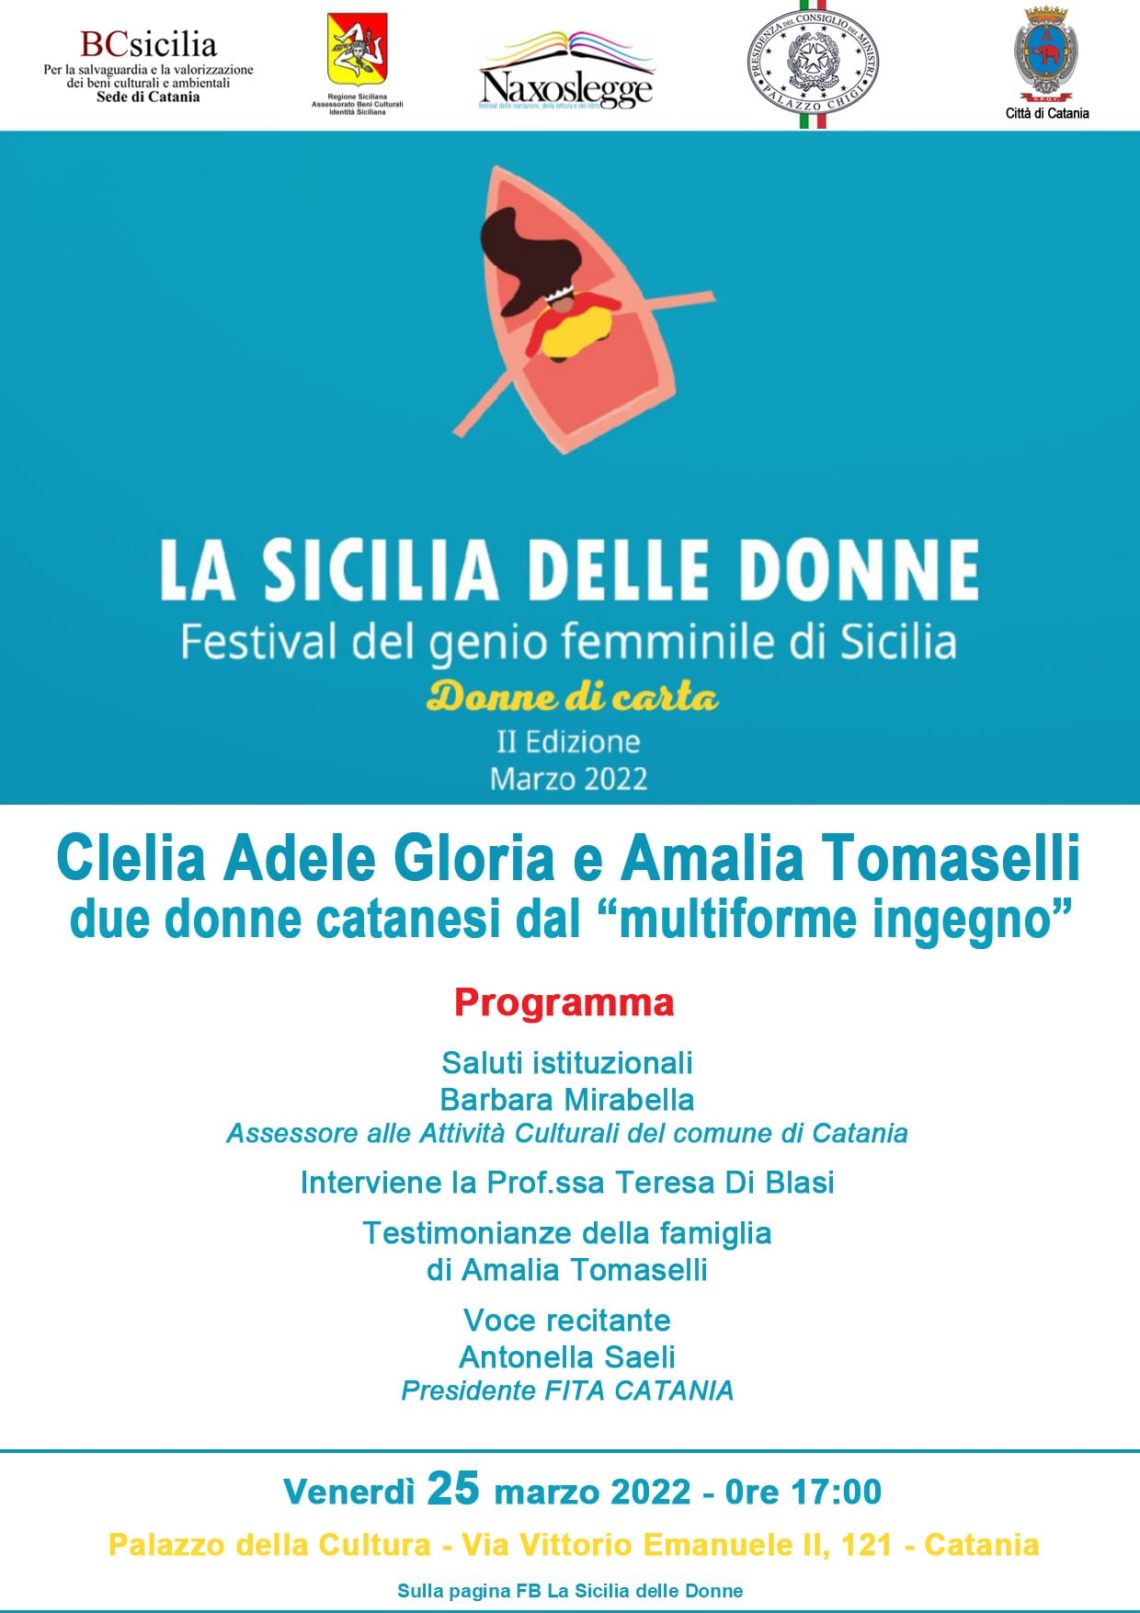 “Donne di carta”: Clelia Adele Gloria e Amalia Tomaselli due donne catanesi dal “Multiforme ingegno”